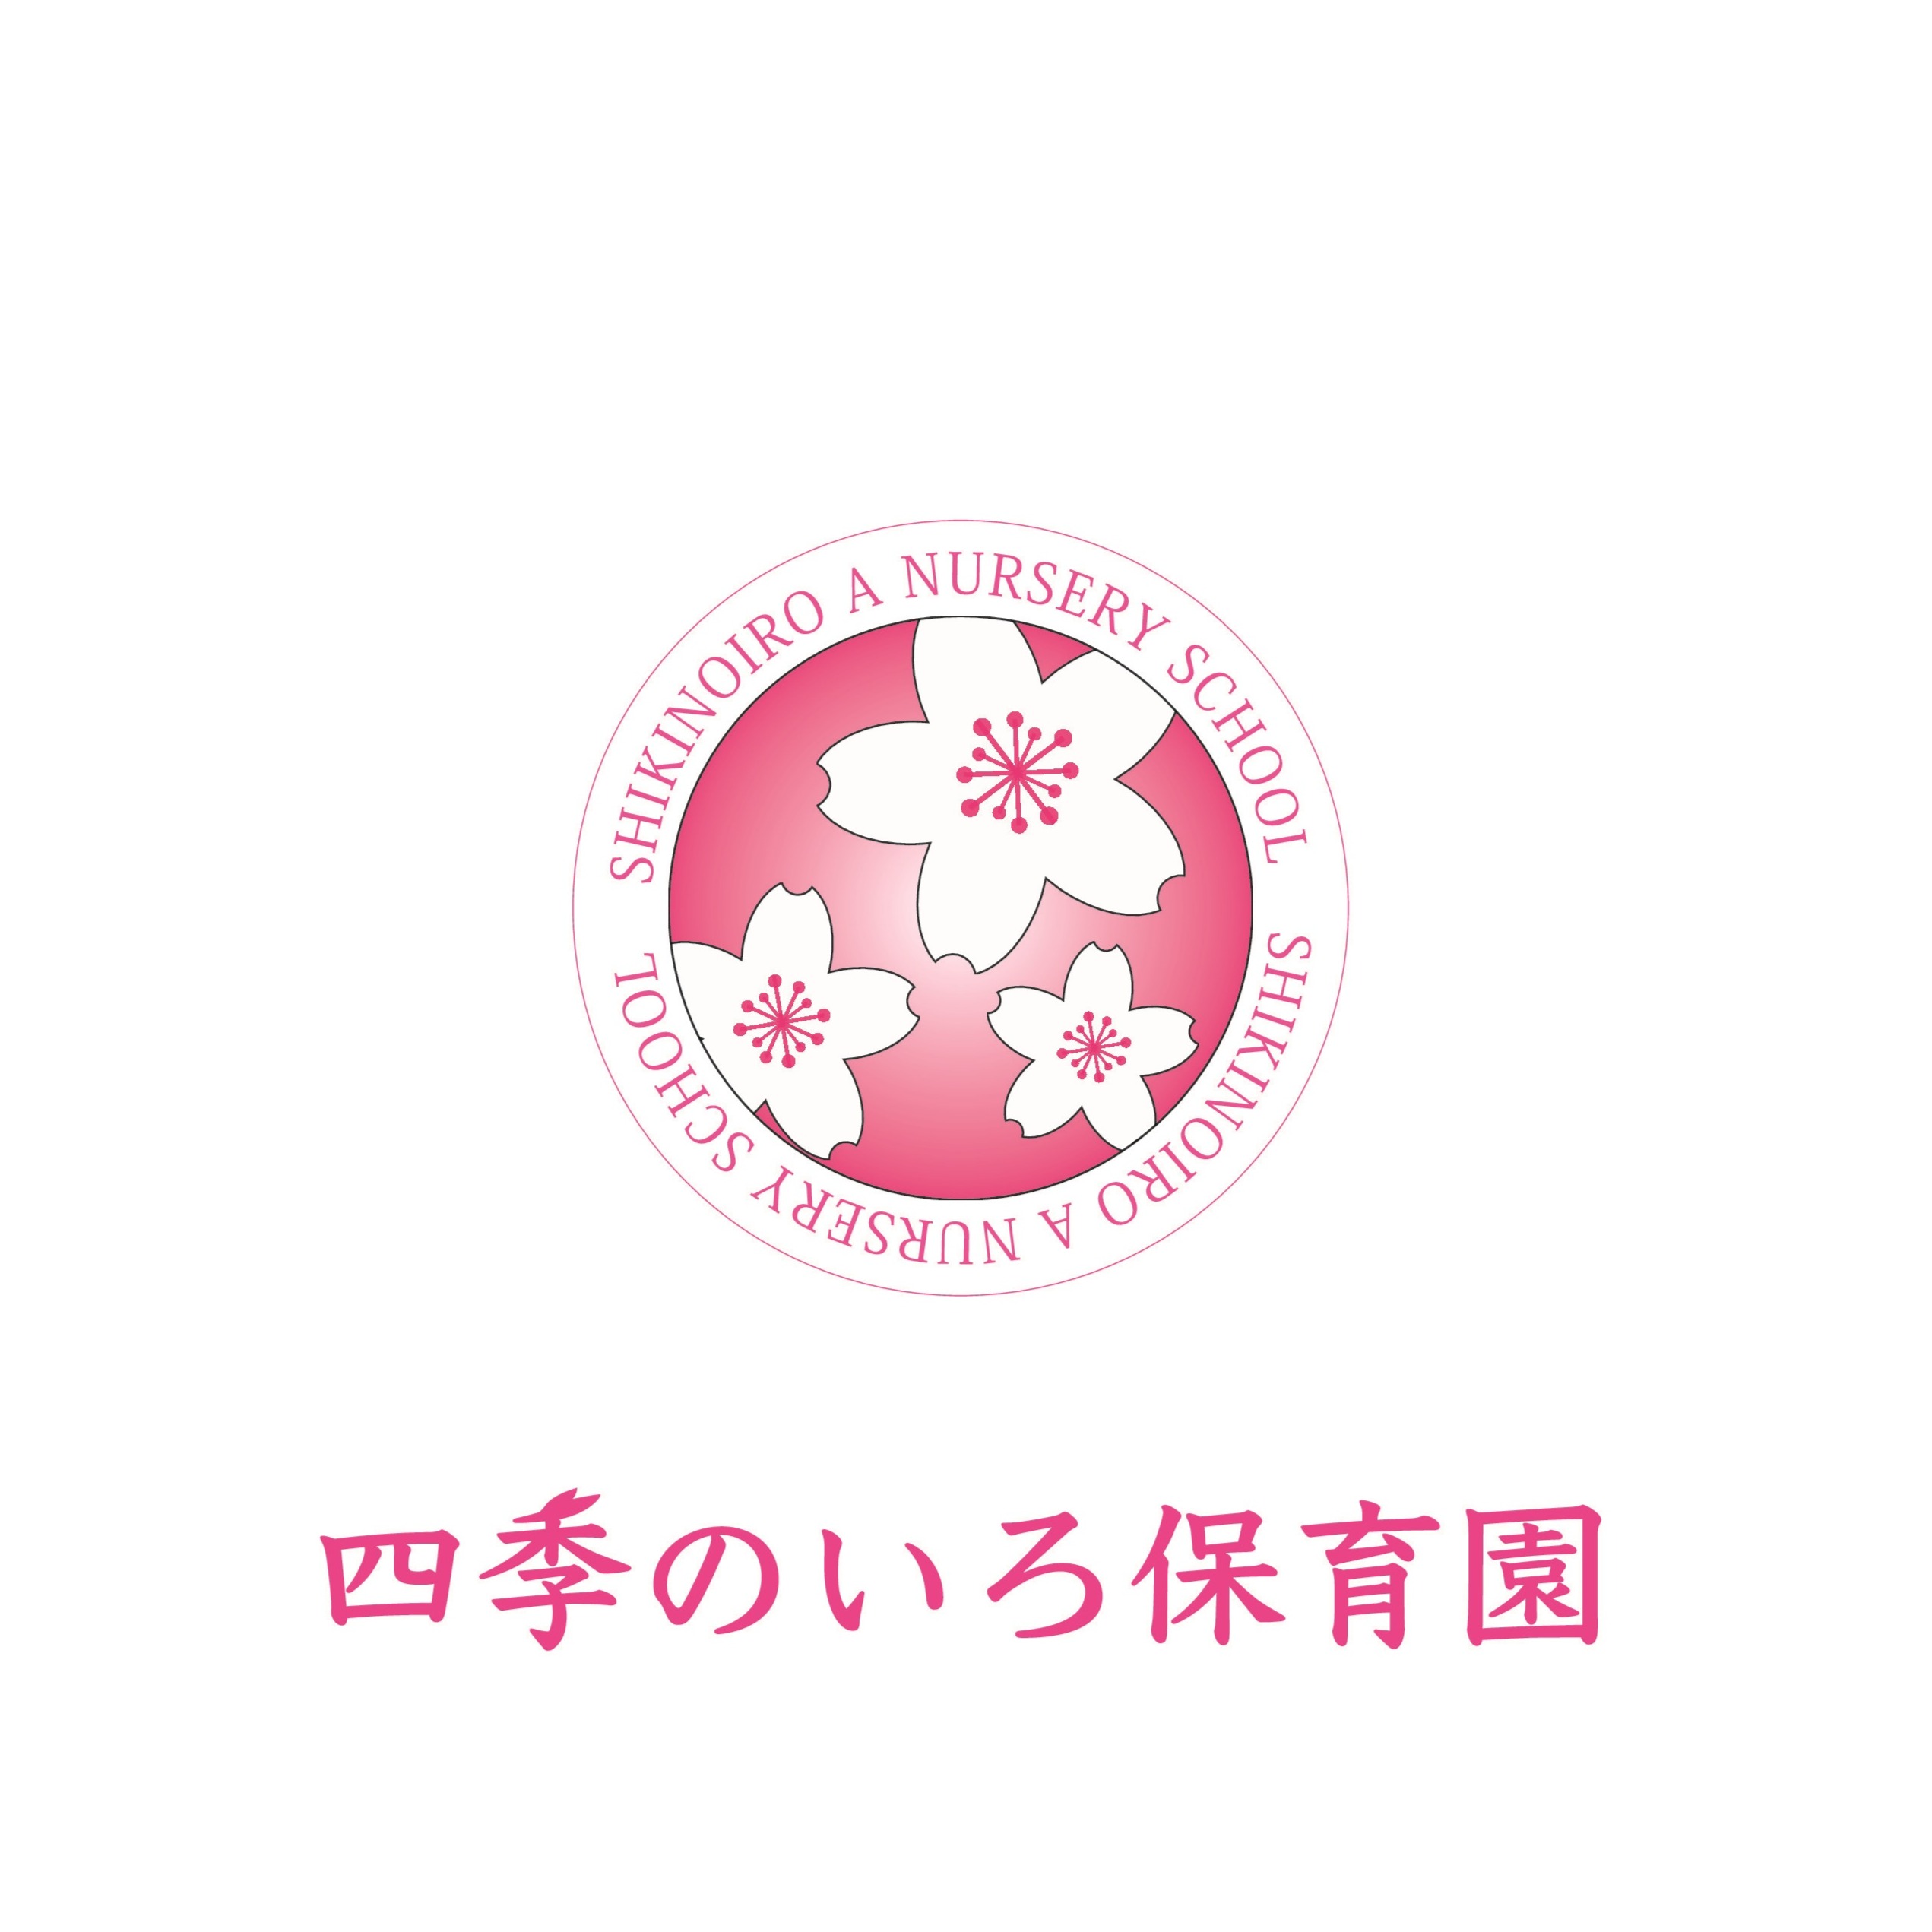 四季のいろ保育園 博多園 Logo